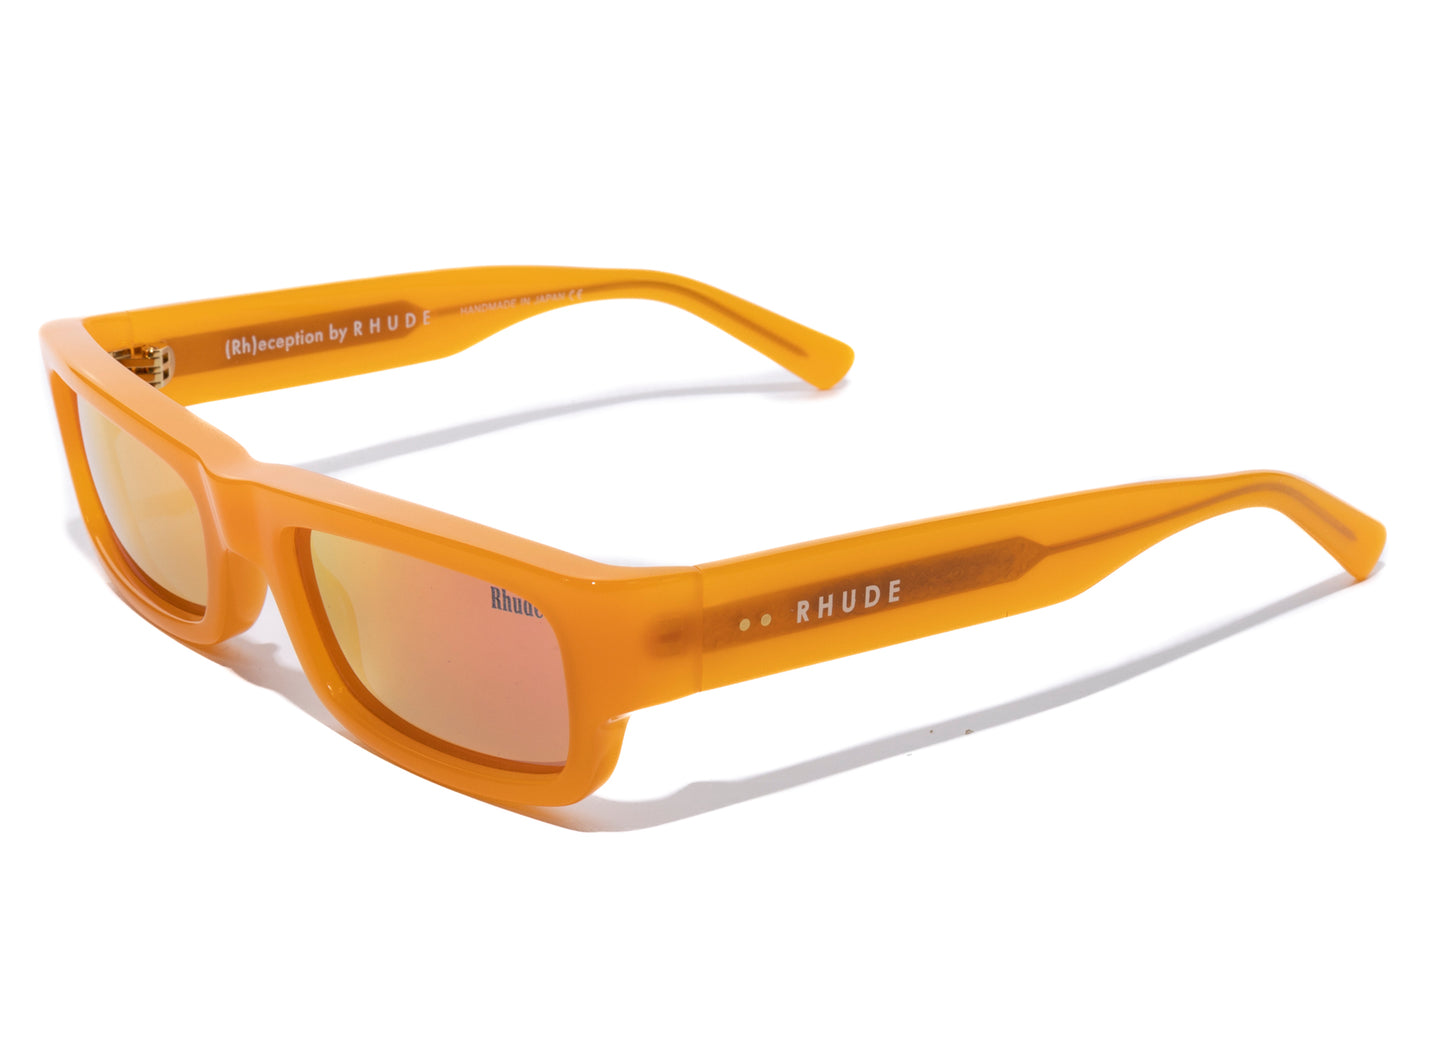 Rhude Rhoyce Frame Sunglasses in Orange